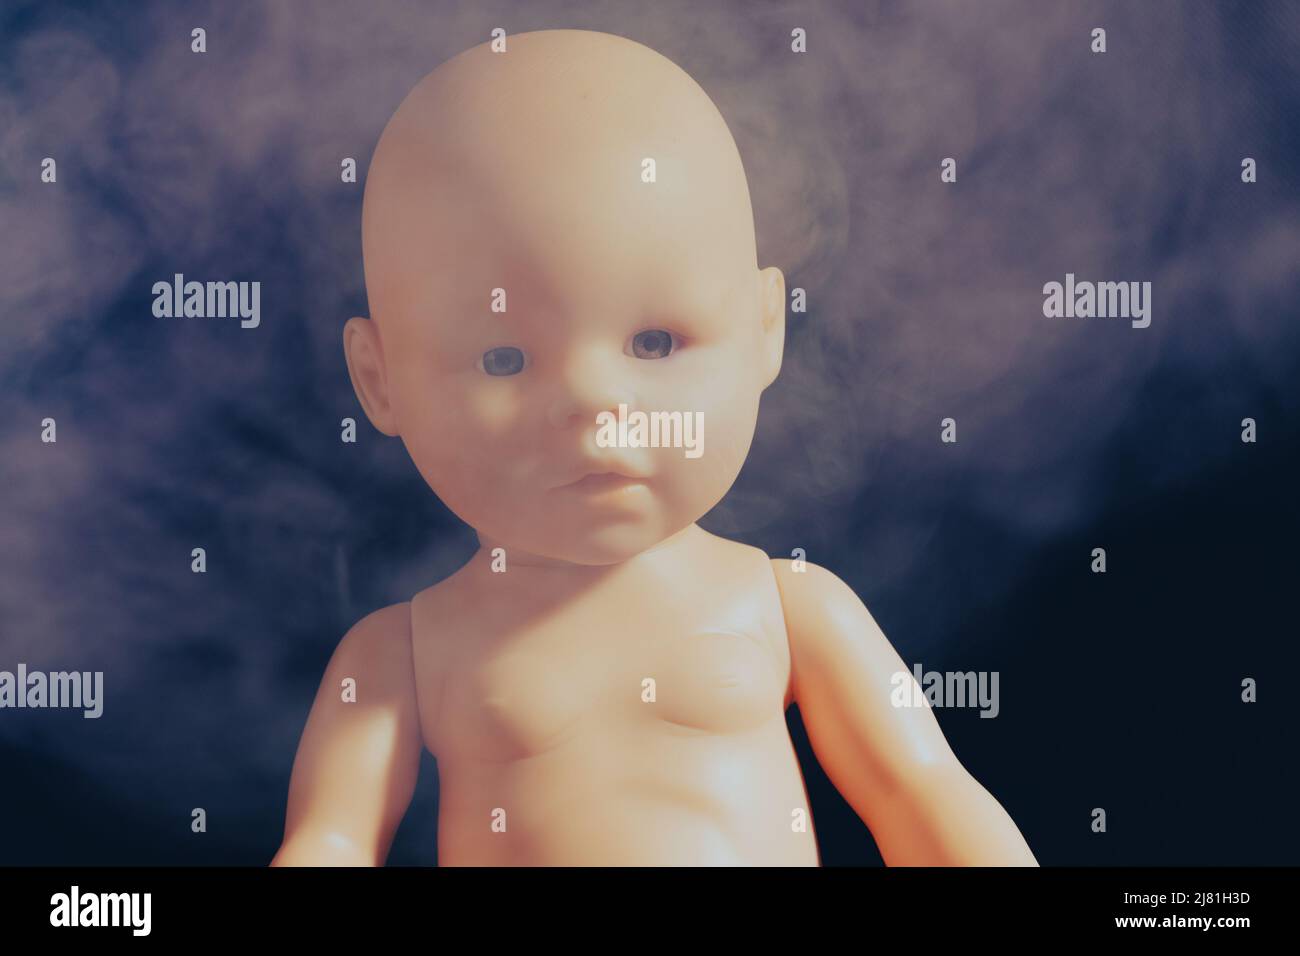 Baby Puppe in Rauch auf einem dunklen Hintergrund. Das Konzept des Rauchens in Gegenwart von Kindern. Hochwertige Fotos Stockfoto